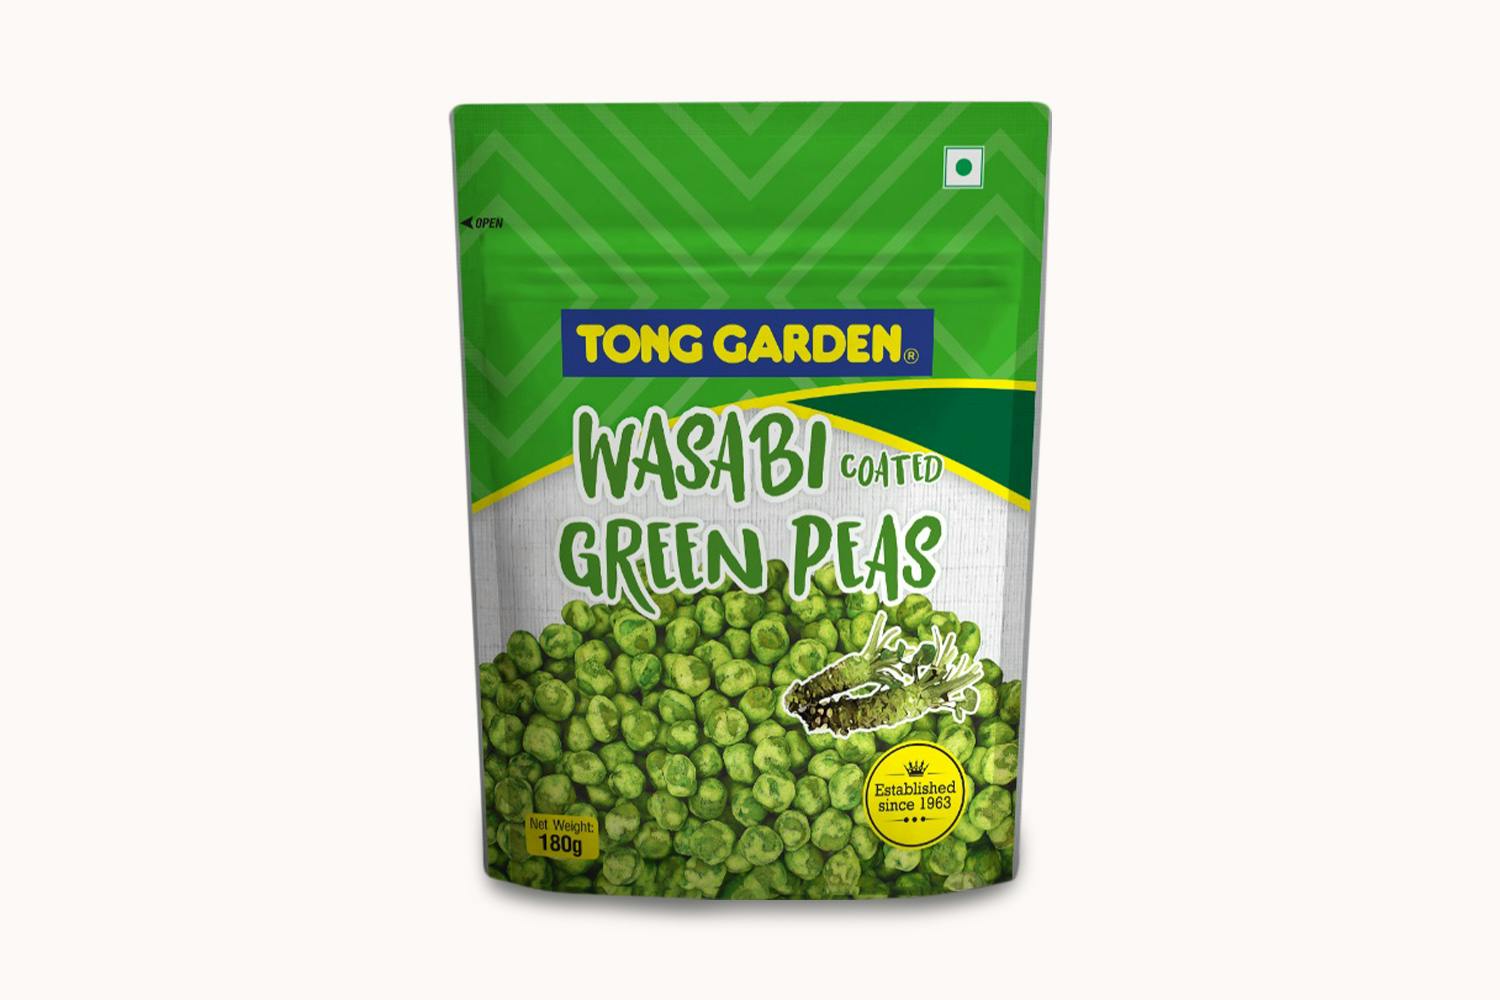 Tong Garden Wasabi Green Peas